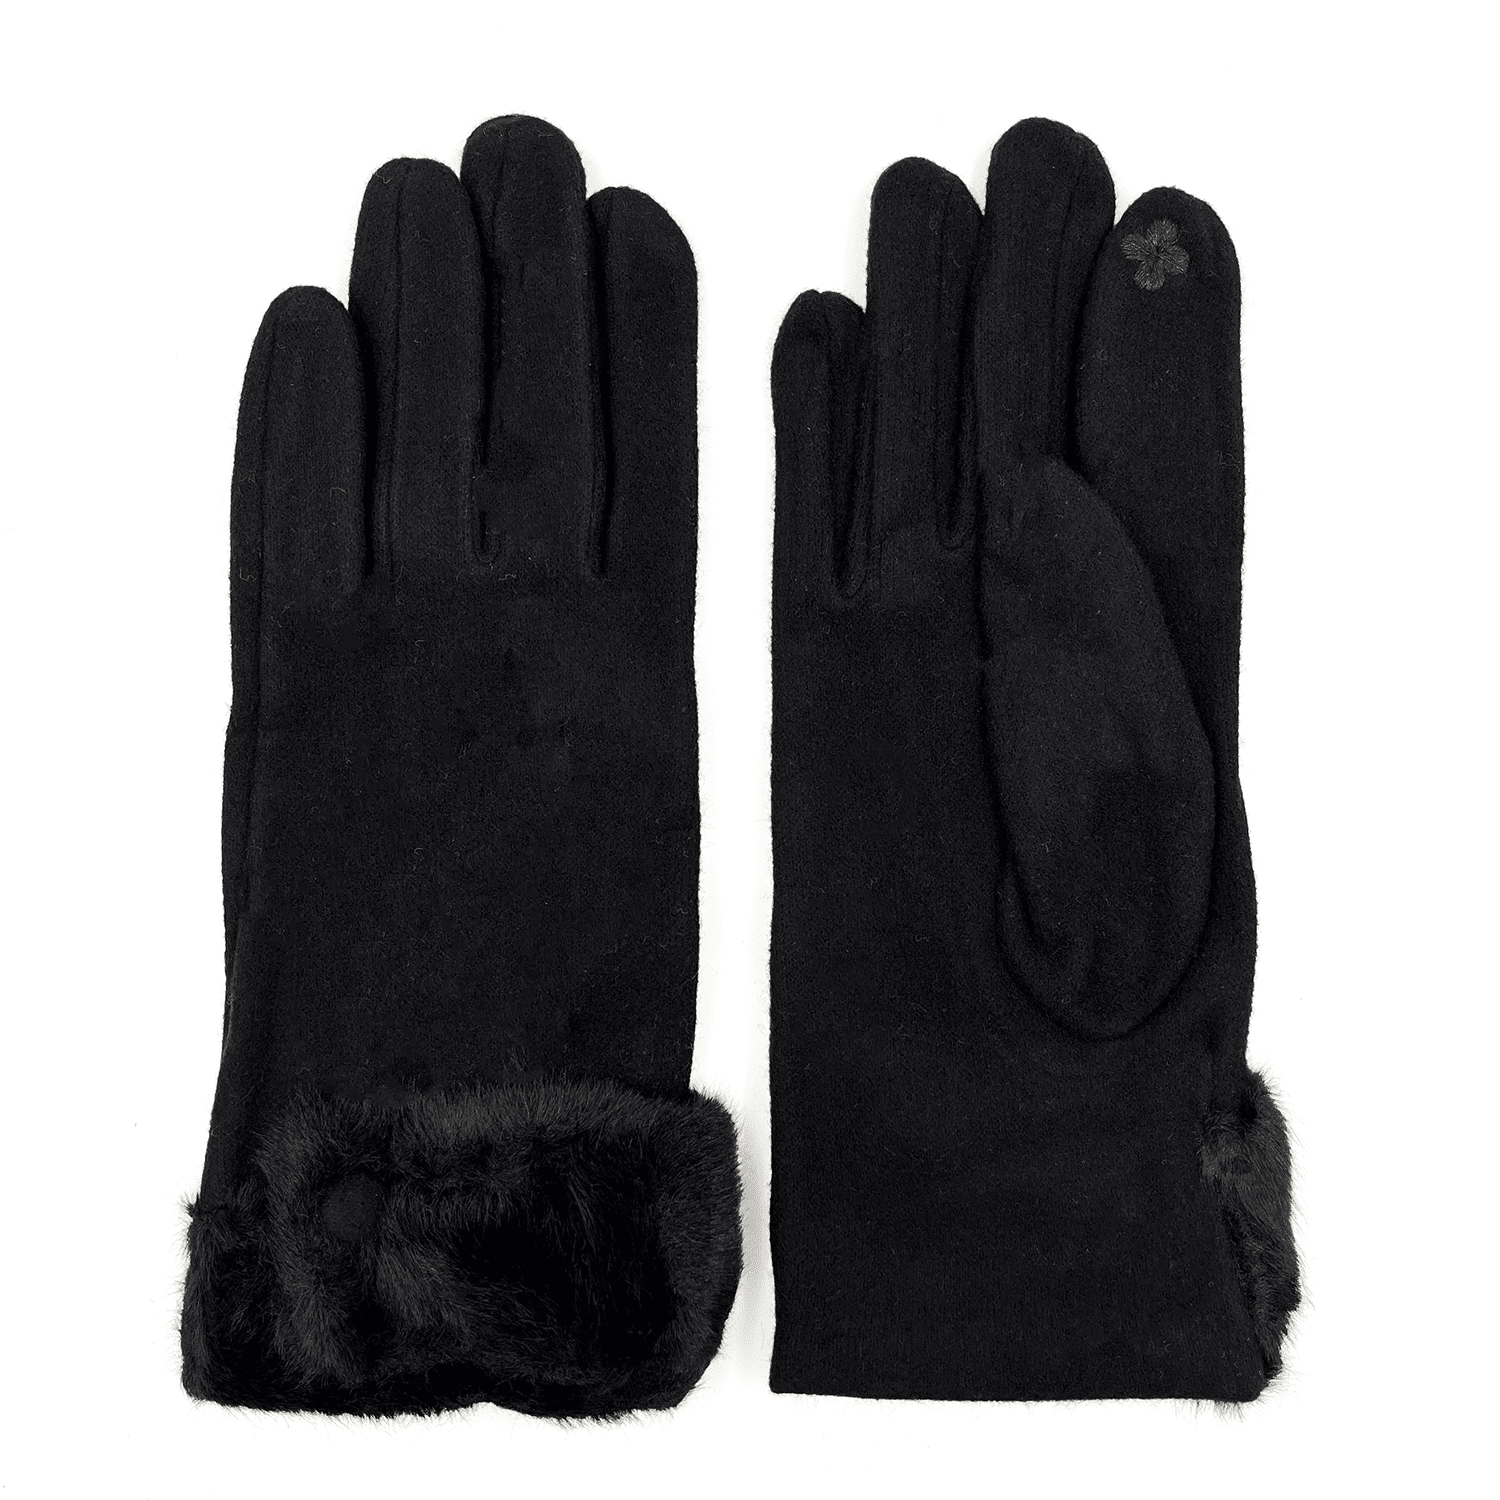 Căldura mănuși - negru